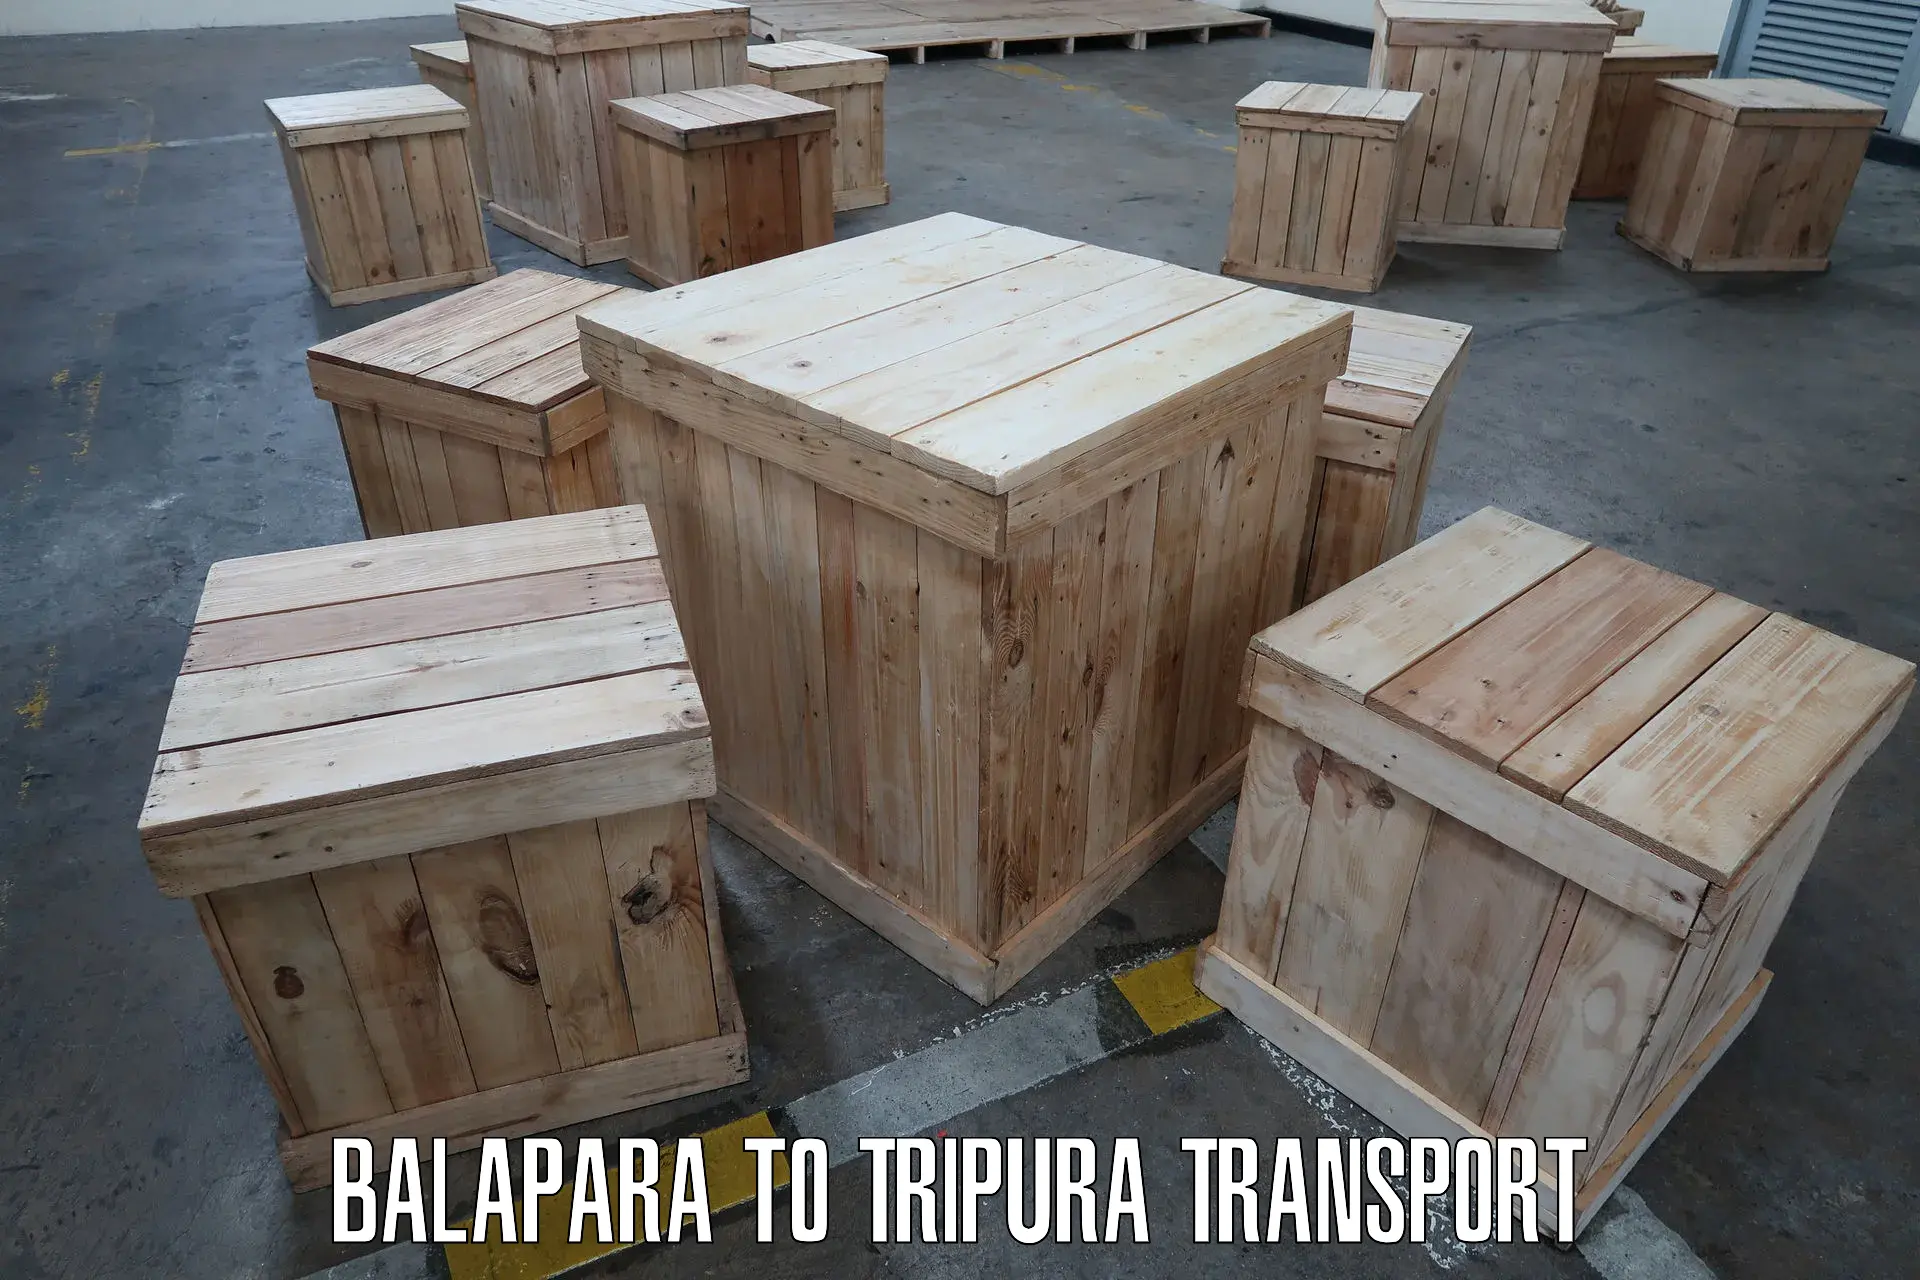 Daily transport service Balapara to Manu Bazar